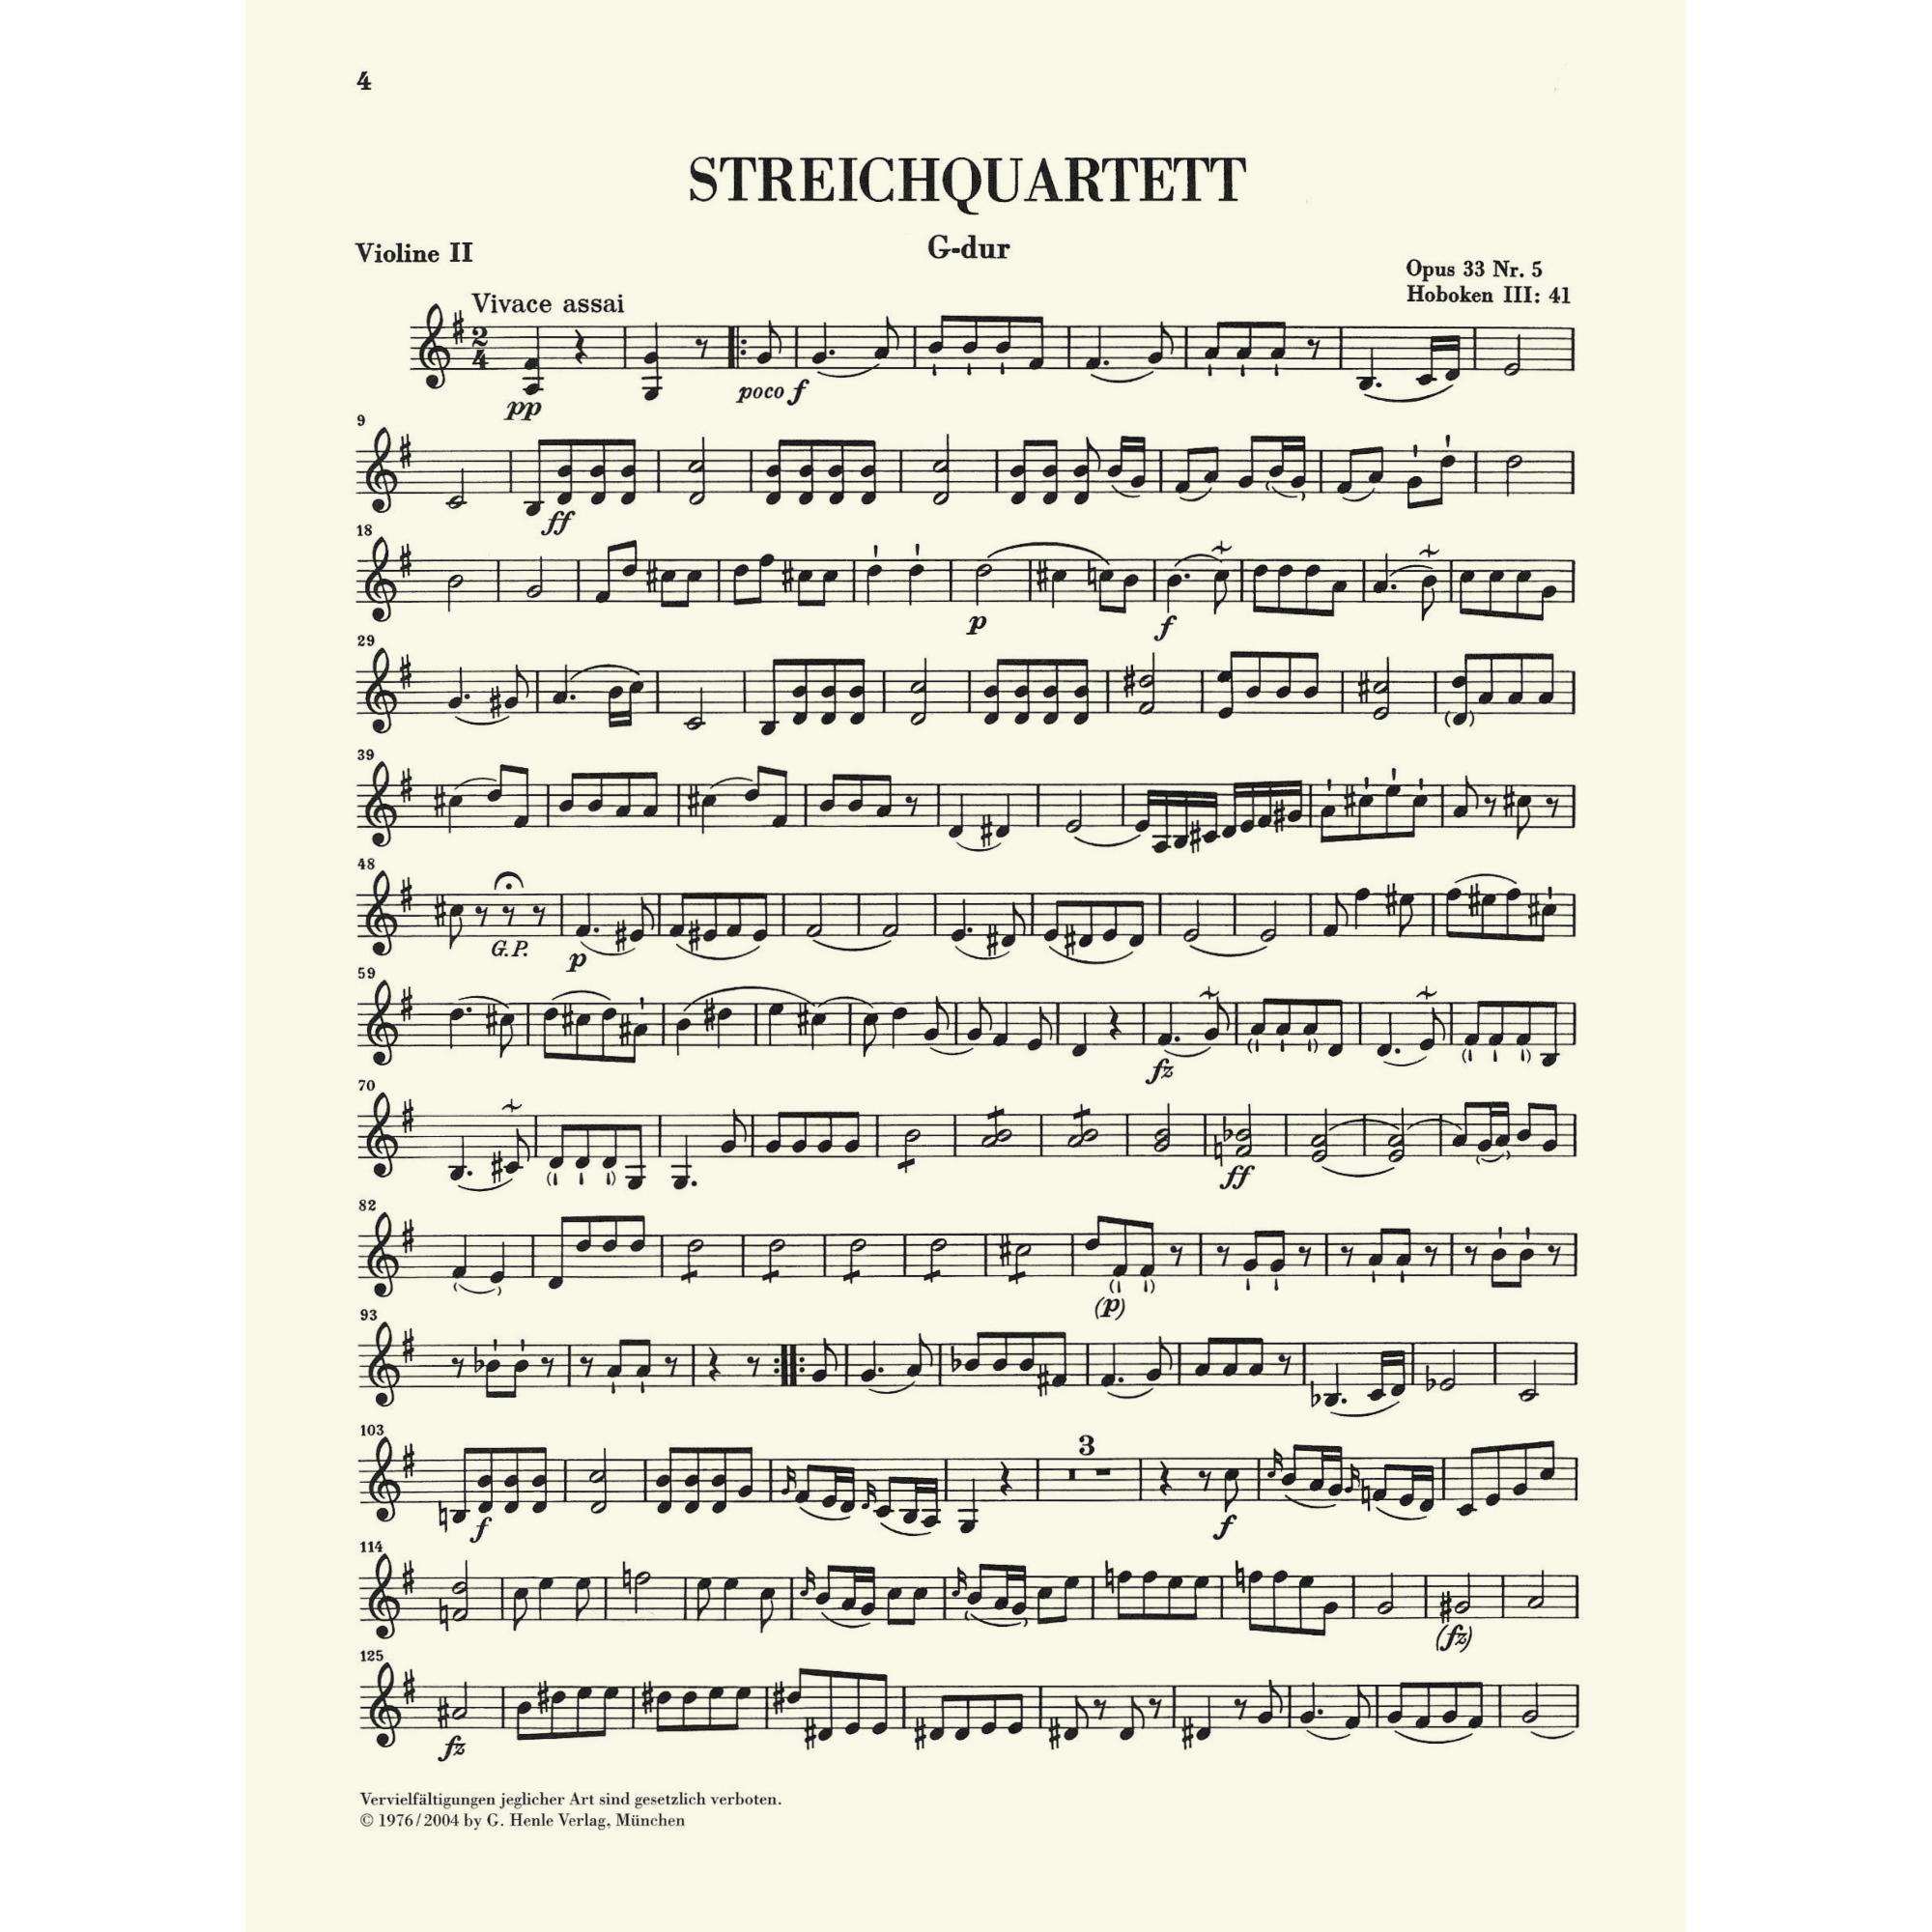 Sample: Violin II (Pg. 4)